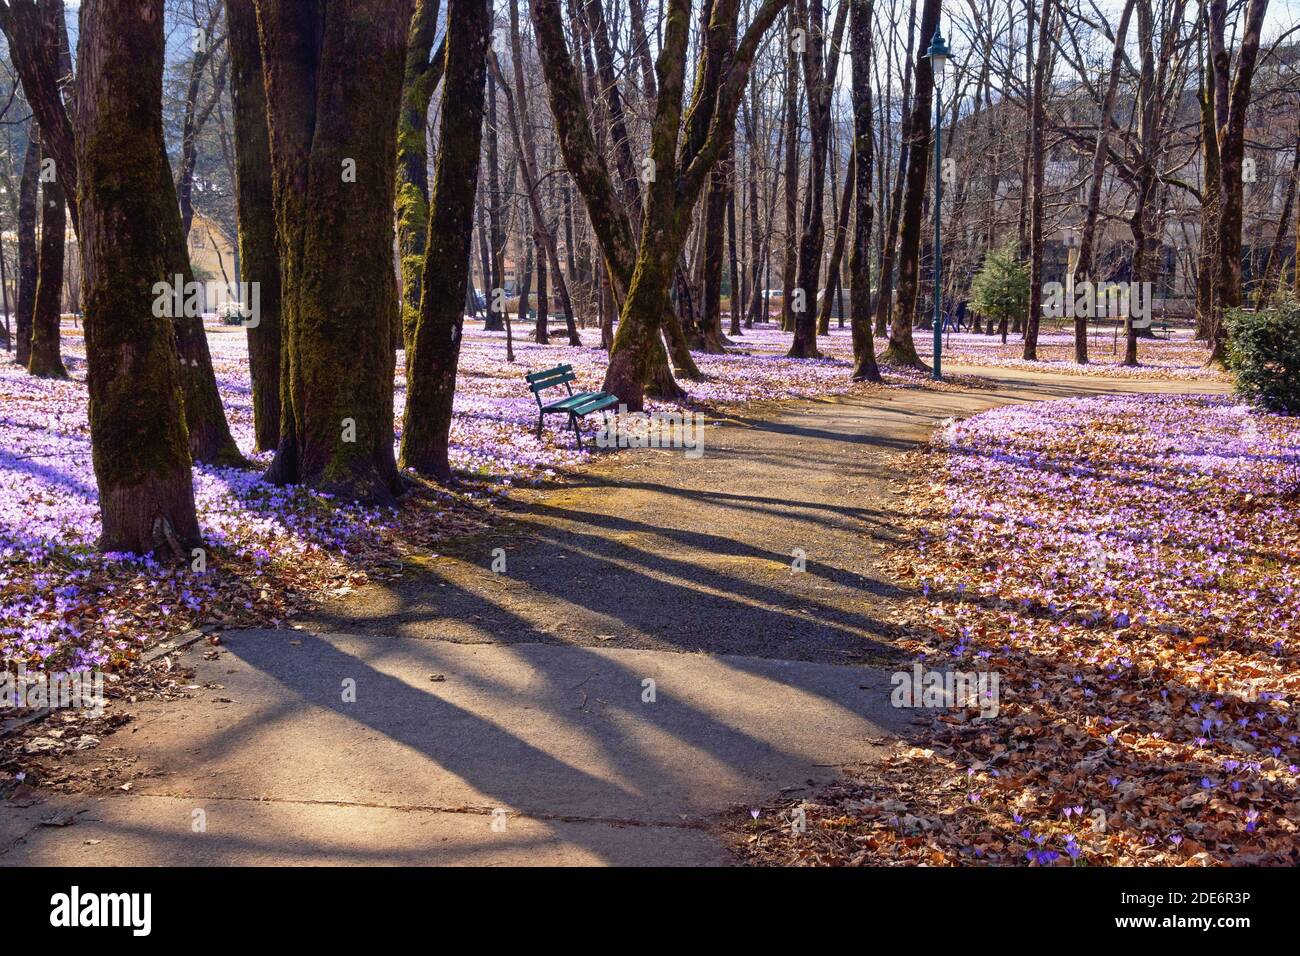 Printemps. Journée de printemps ensoleillée dans le parc de la ville. Monténégro, ville de Cetinje. Fleurs de Crocus (Crocus vernus) Banque D'Images